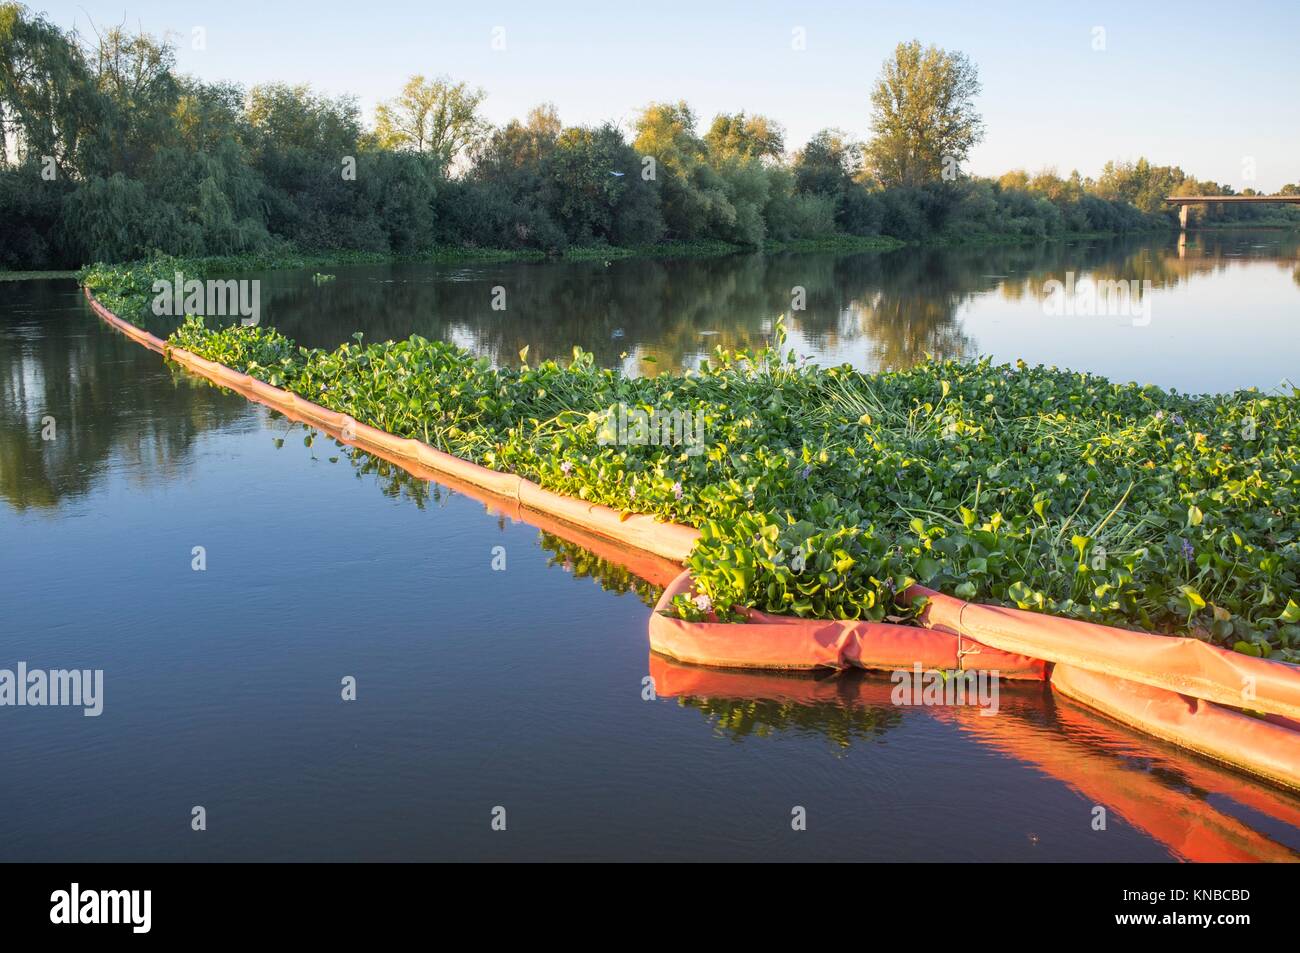 Barrera flotante para el control de una planta invasora jacinto de agua. Muy problemáticas las especies invasoras en el Guadiana, Badajoz, España. Foto de stock